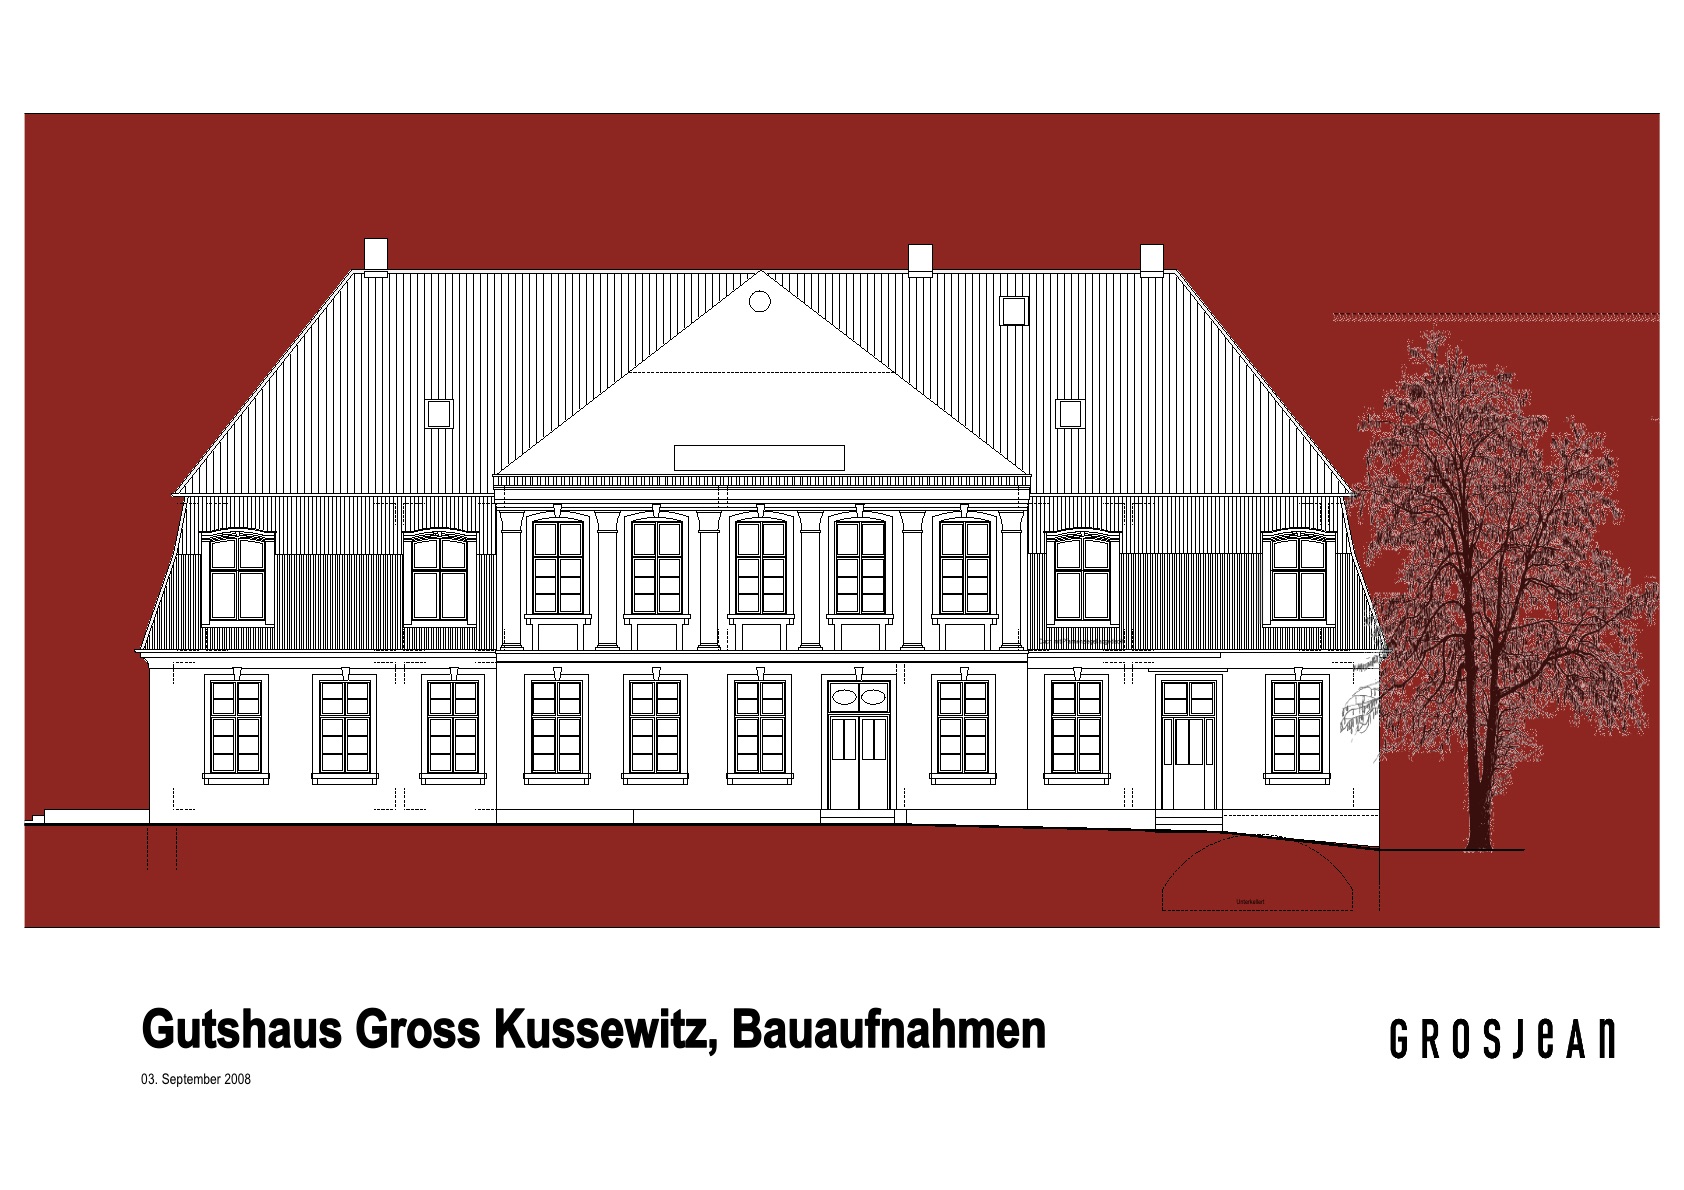 Bauaufnahme Gutshaus Gross Kussewitz